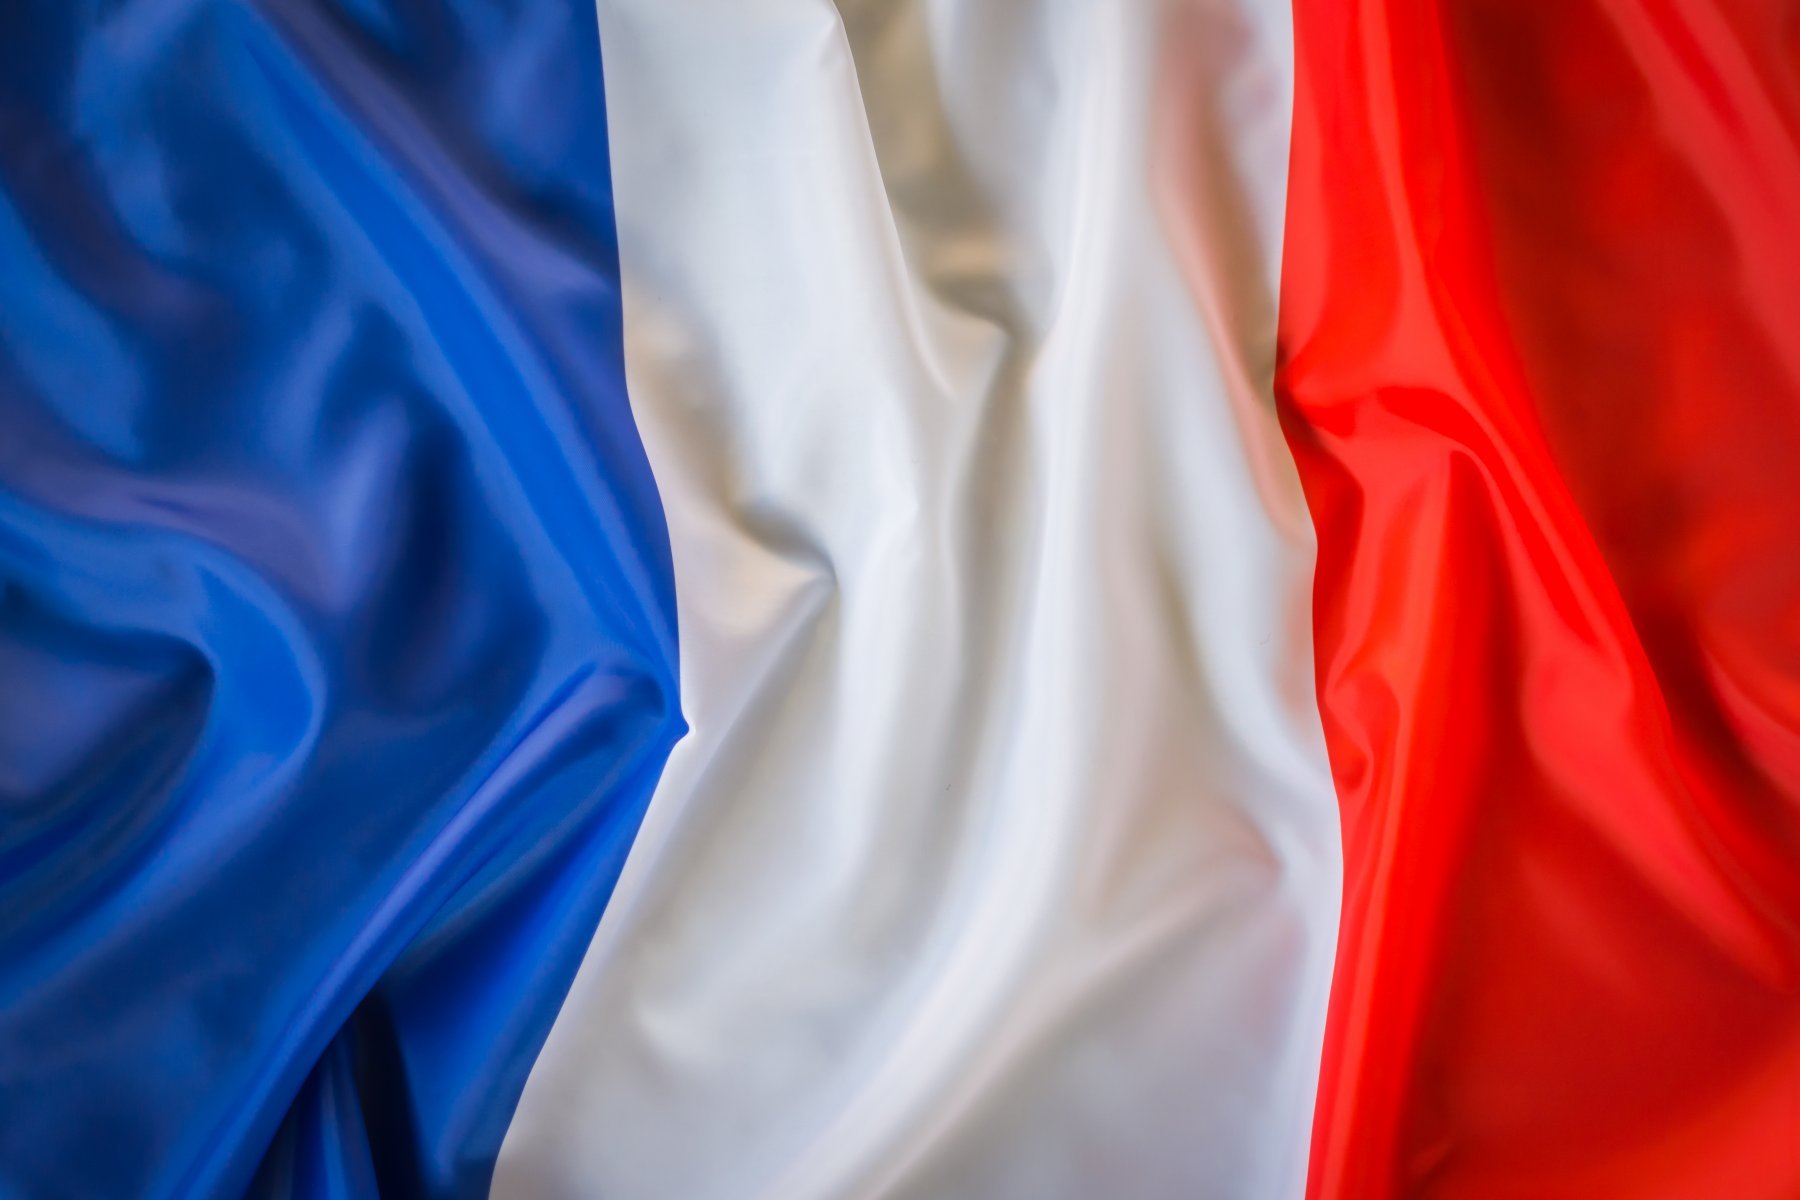 Аналитик: во Франции возможно создание технического правительства 